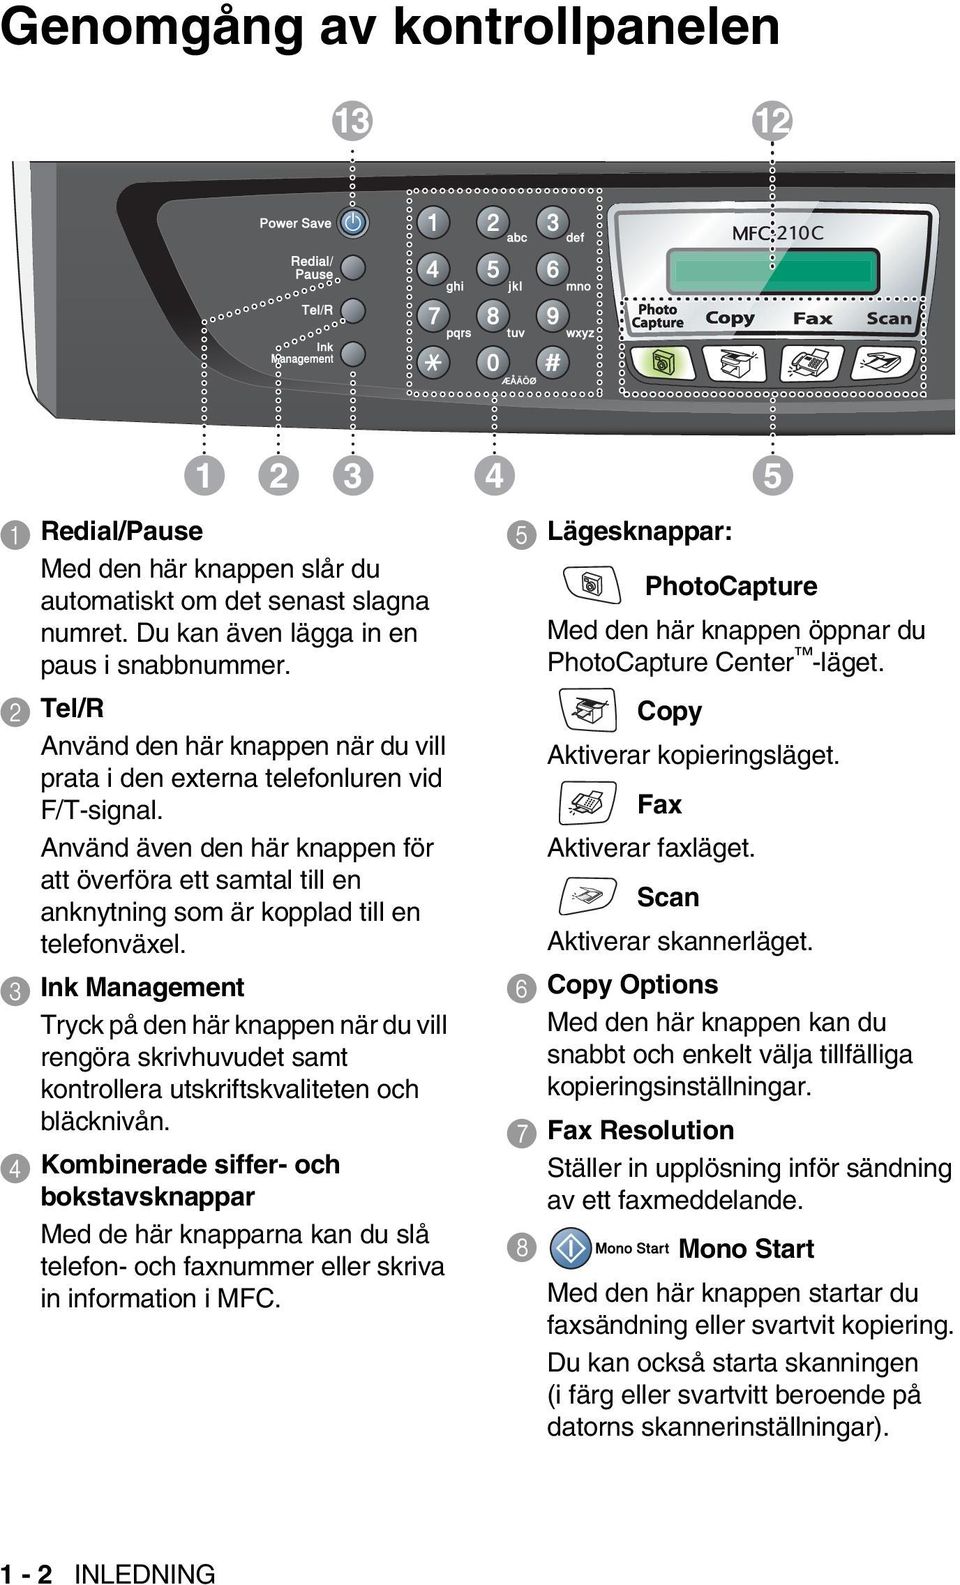 Använd även den här knappen för att överföra ett samtal till en anknytning som är kopplad till en telefonväxel.